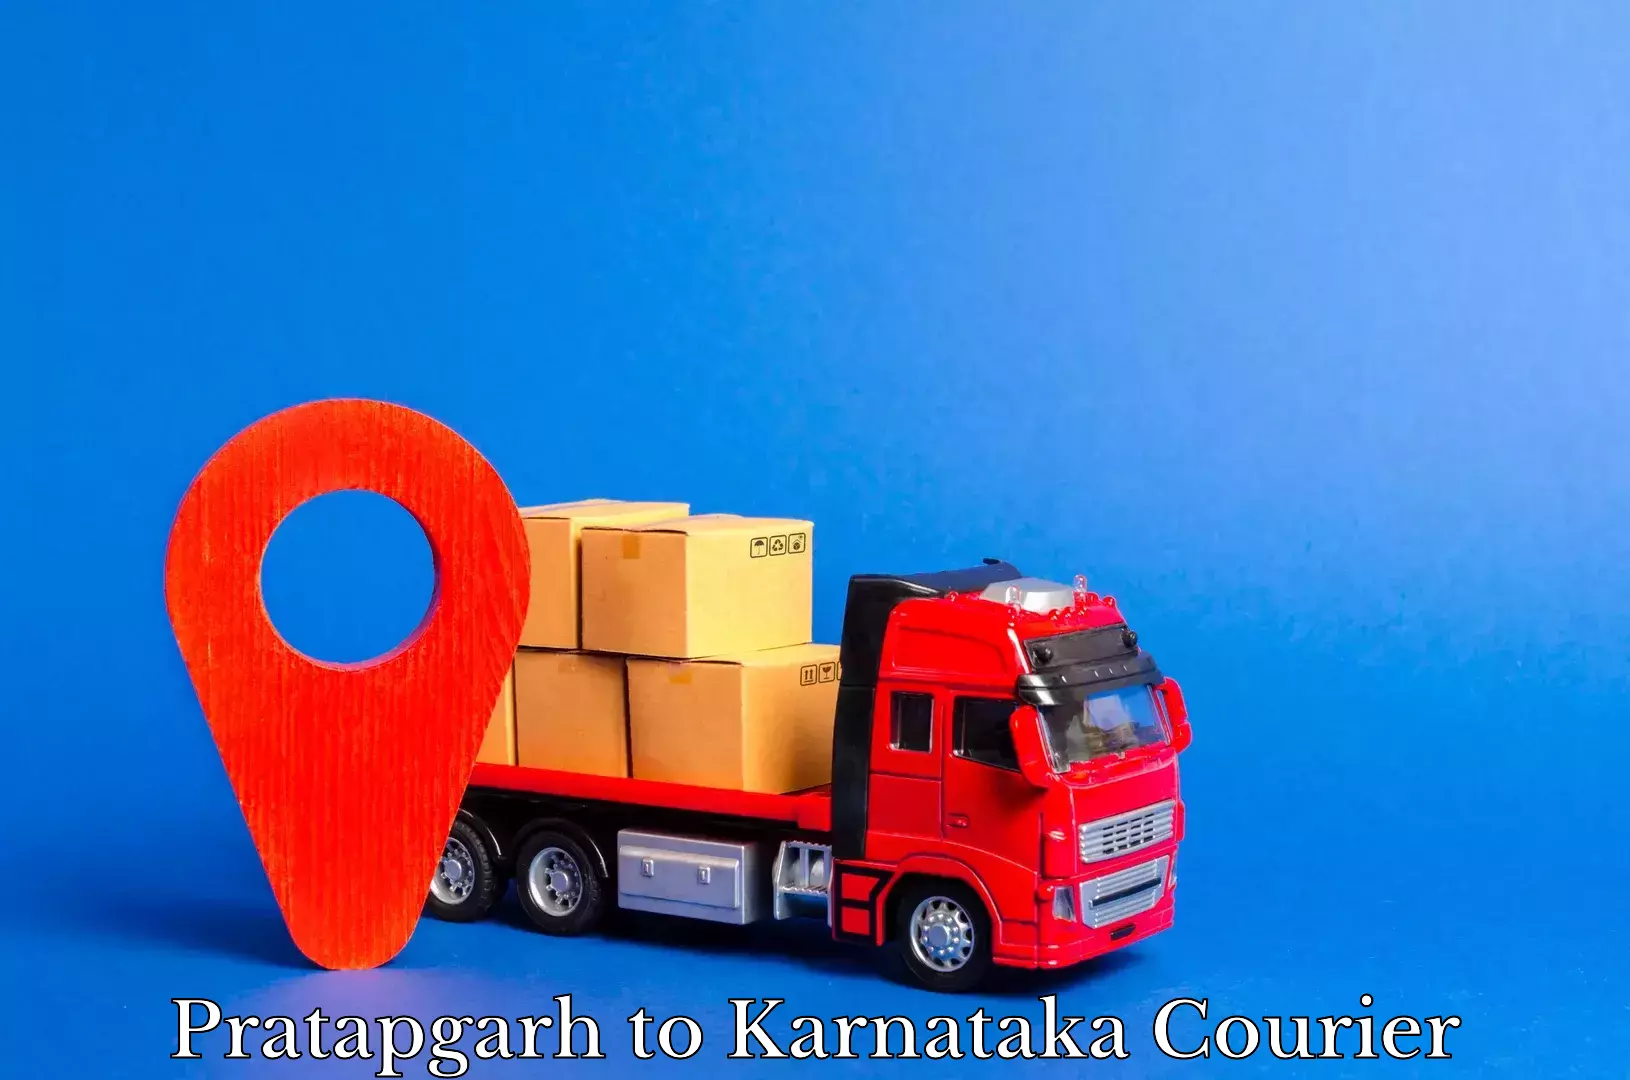 Air courier services Pratapgarh to Karnataka